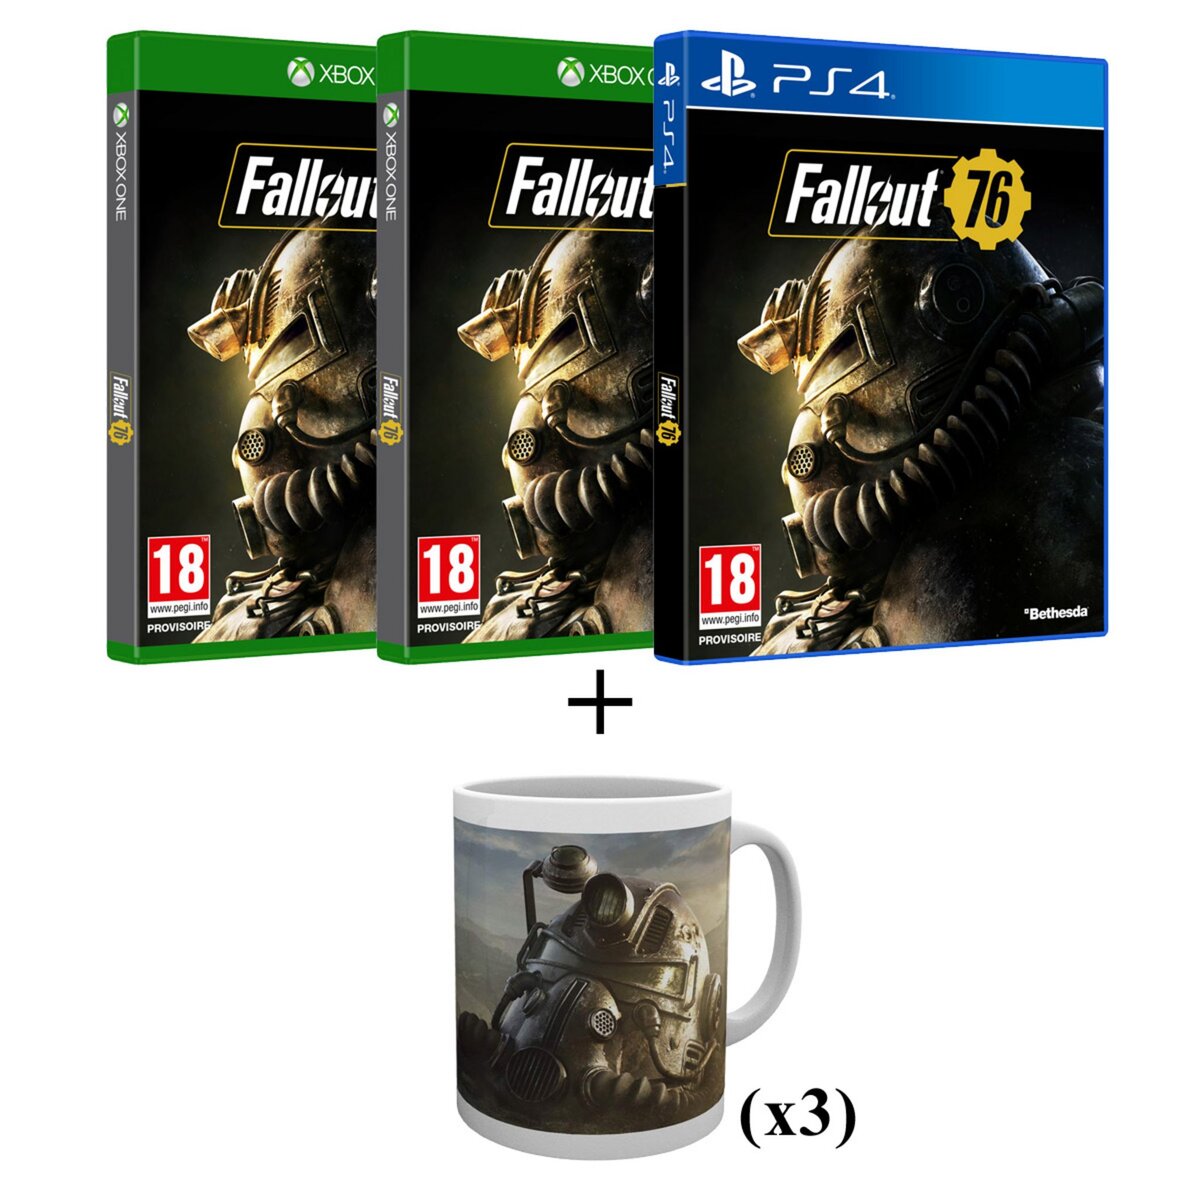 2 Jeux Fallout 76 XBOX ONE + 1 Jeu Fallout 76 PS4 + 3 Mugs offerts